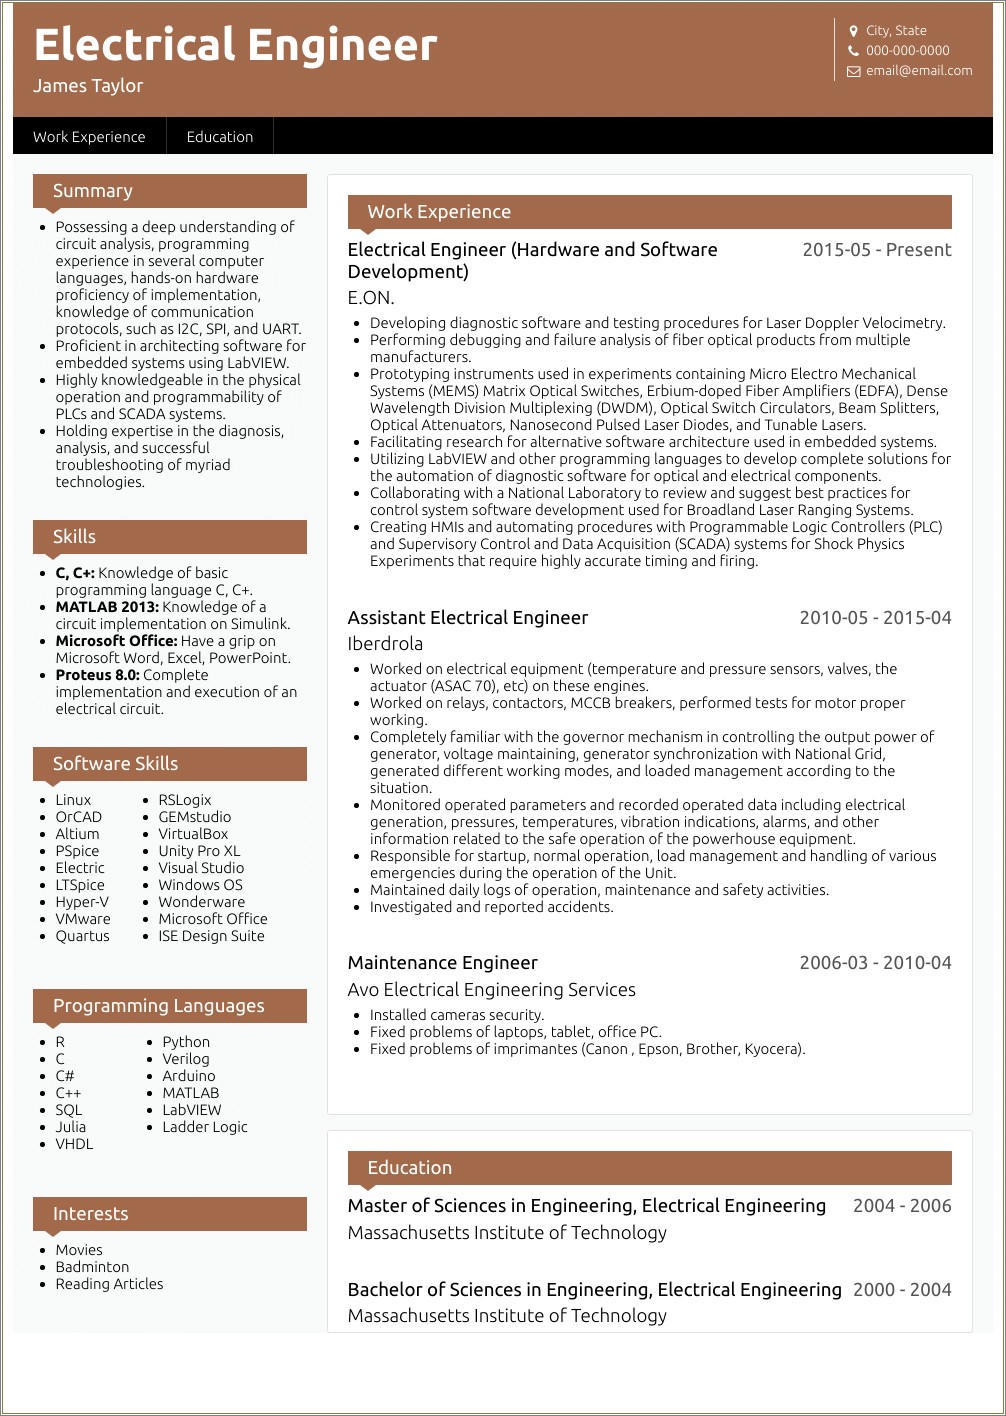 electrical-engineer-resume-format-in-word-resume-example-gallery